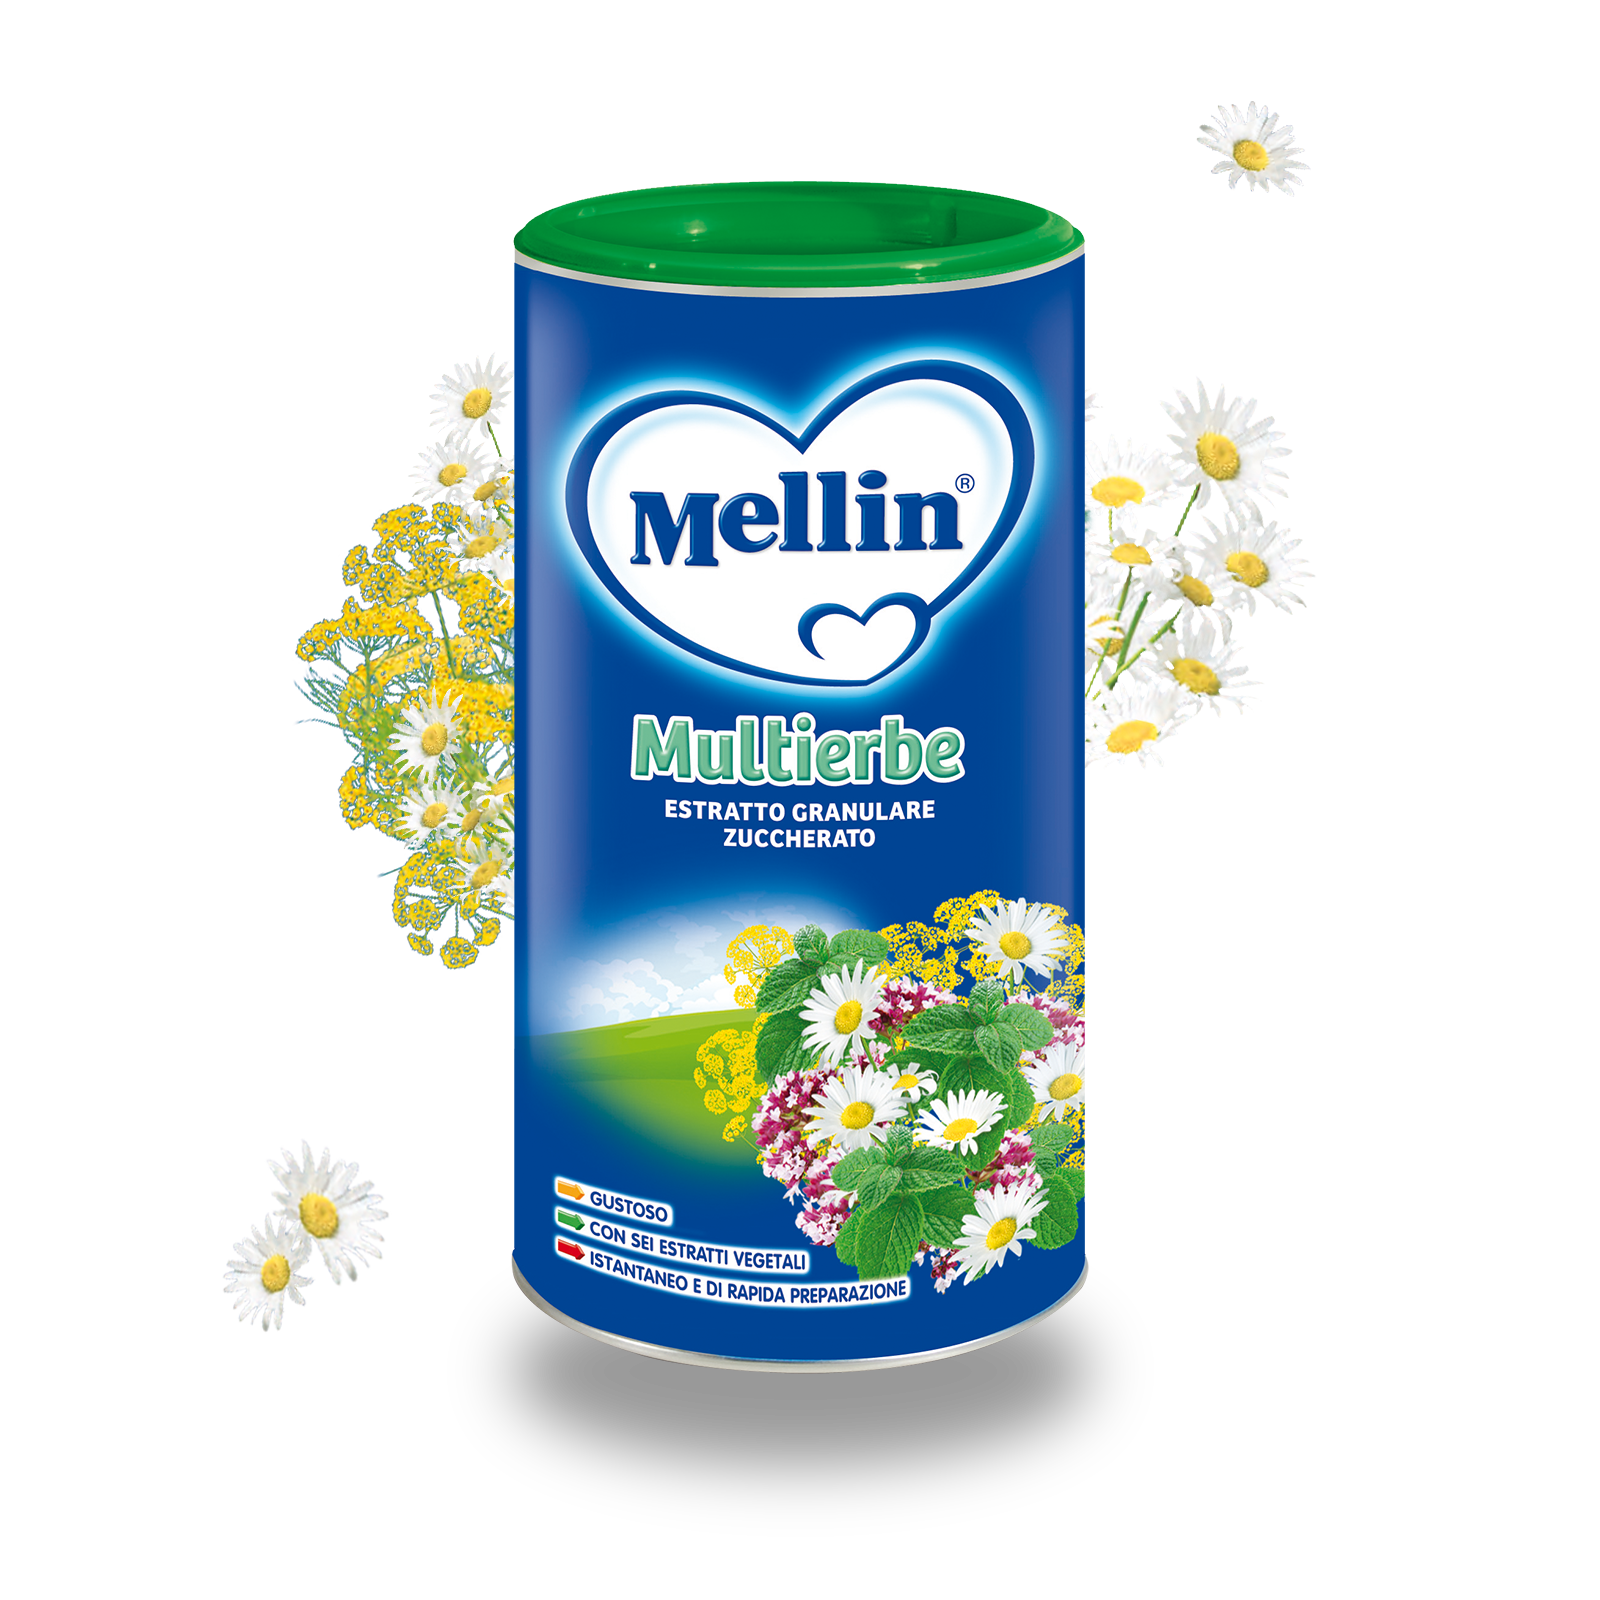 Multierbe Confezione da 200 g ℮ | Mellin